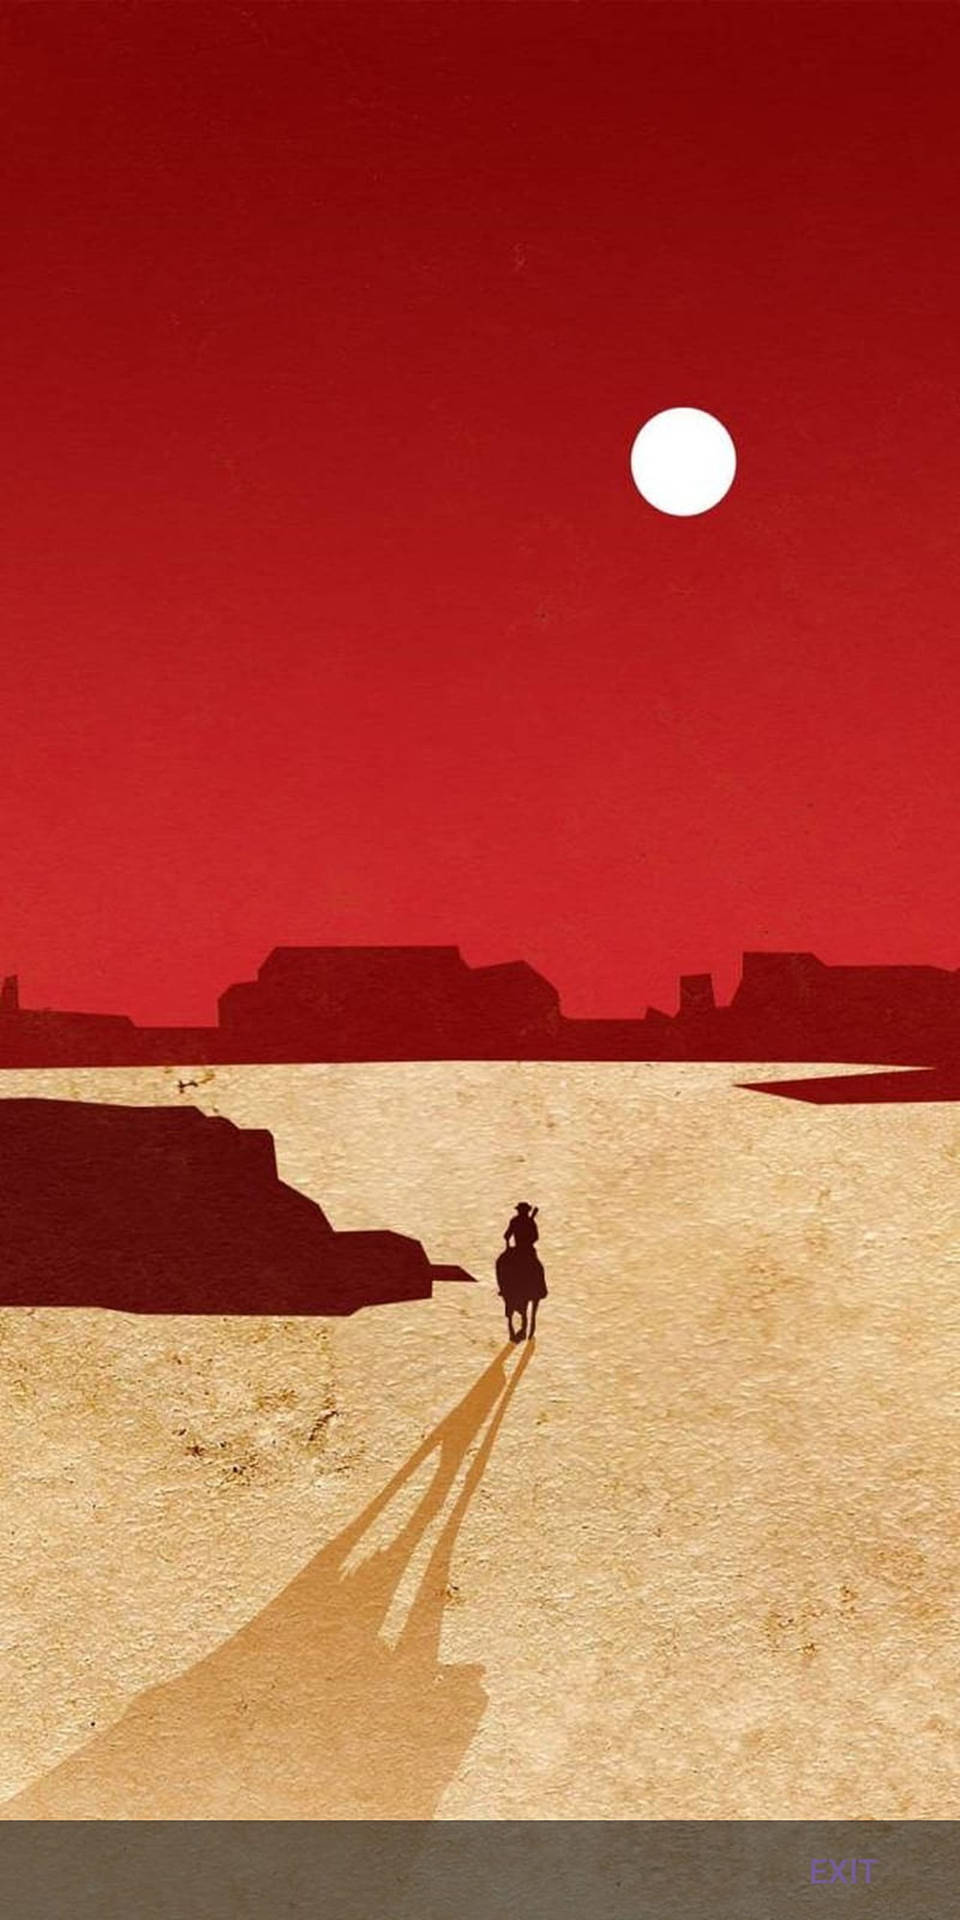 Ridiväg In I Solnedgången På Denna Vackra Häst Från Red Dead Redemption 2 Som Dator- Eller Mobilbakgrundsbild. Wallpaper